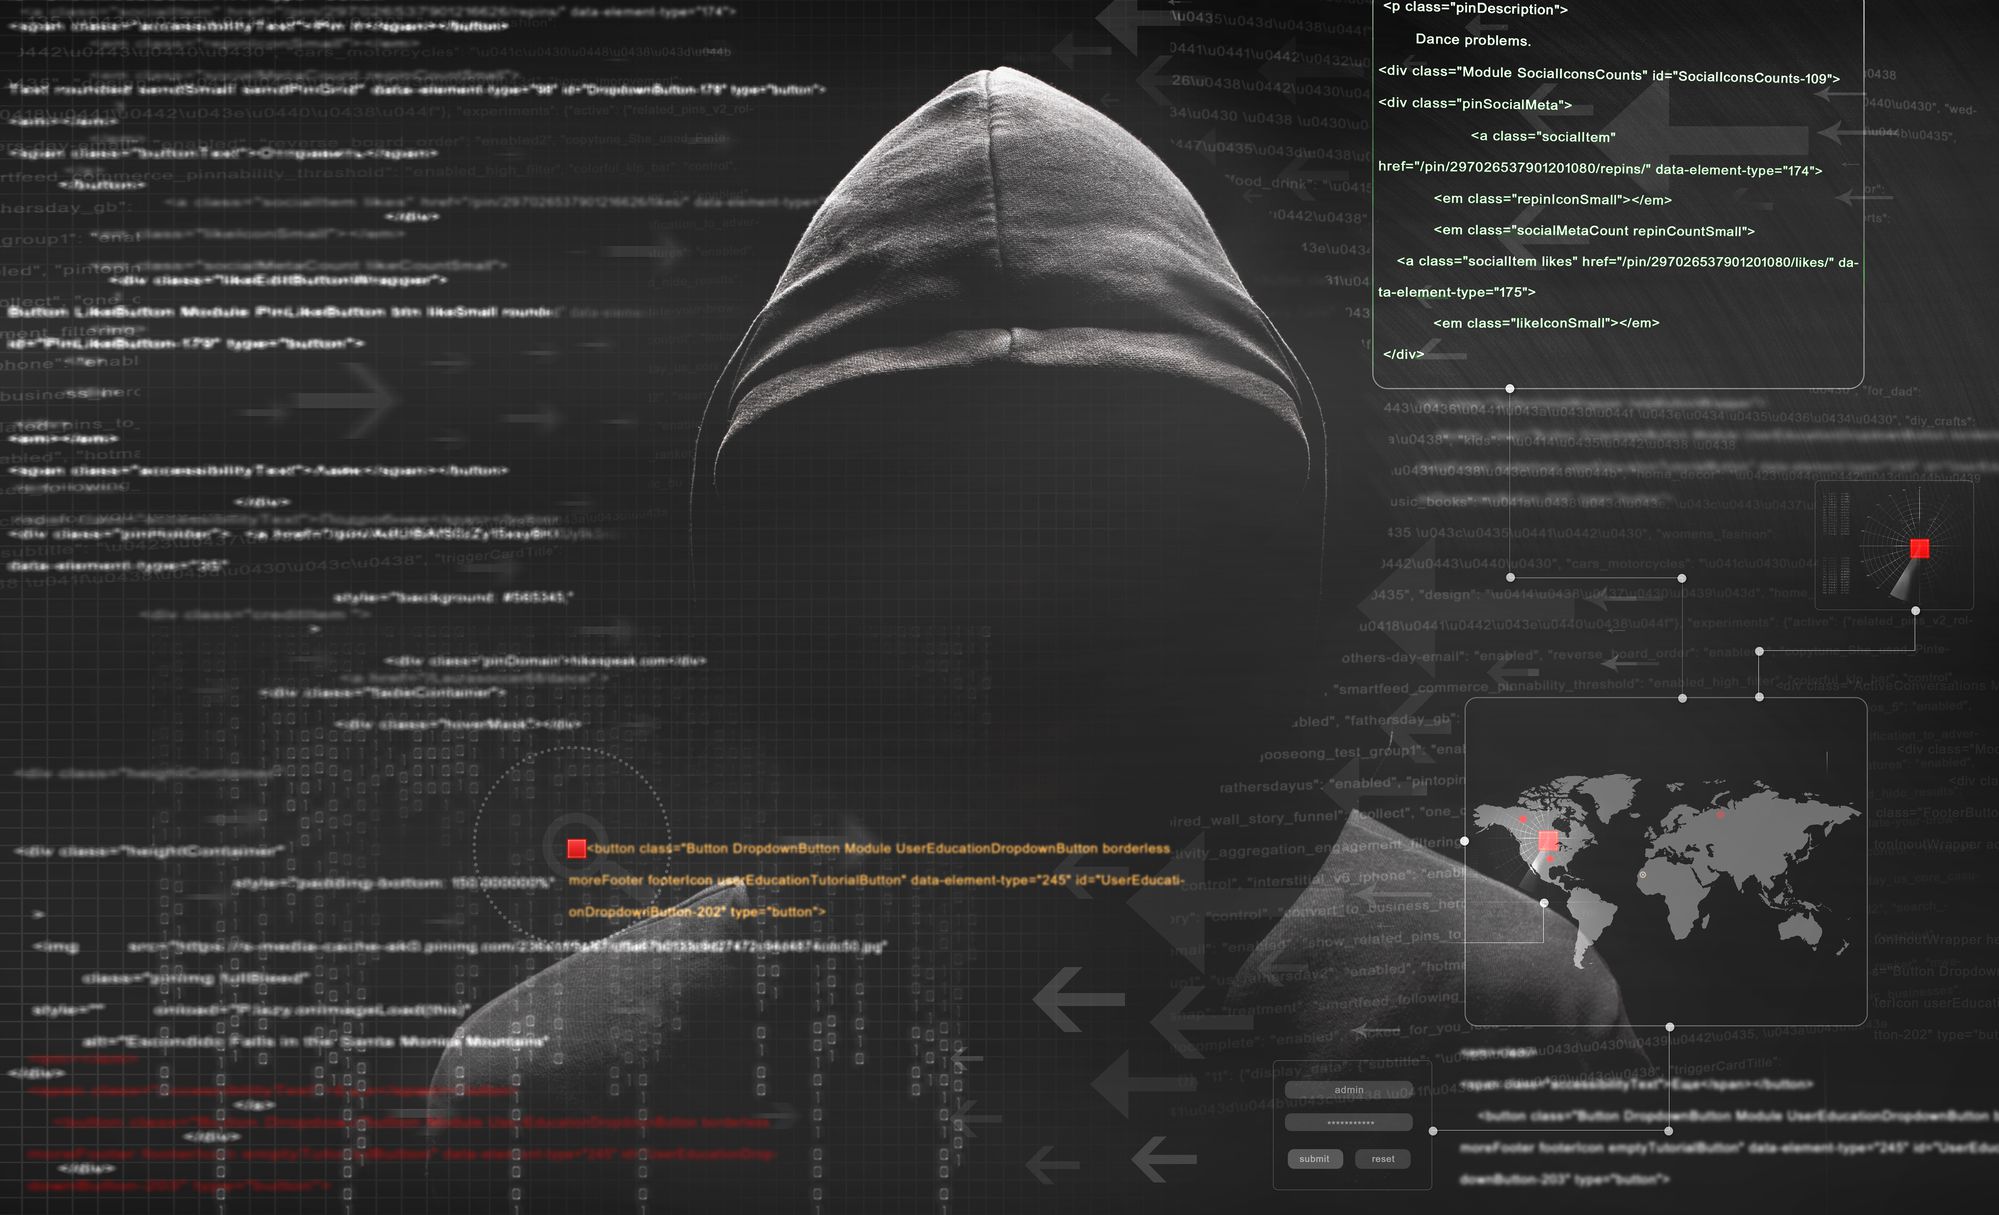 O que é um hacker e como se proteger deles?